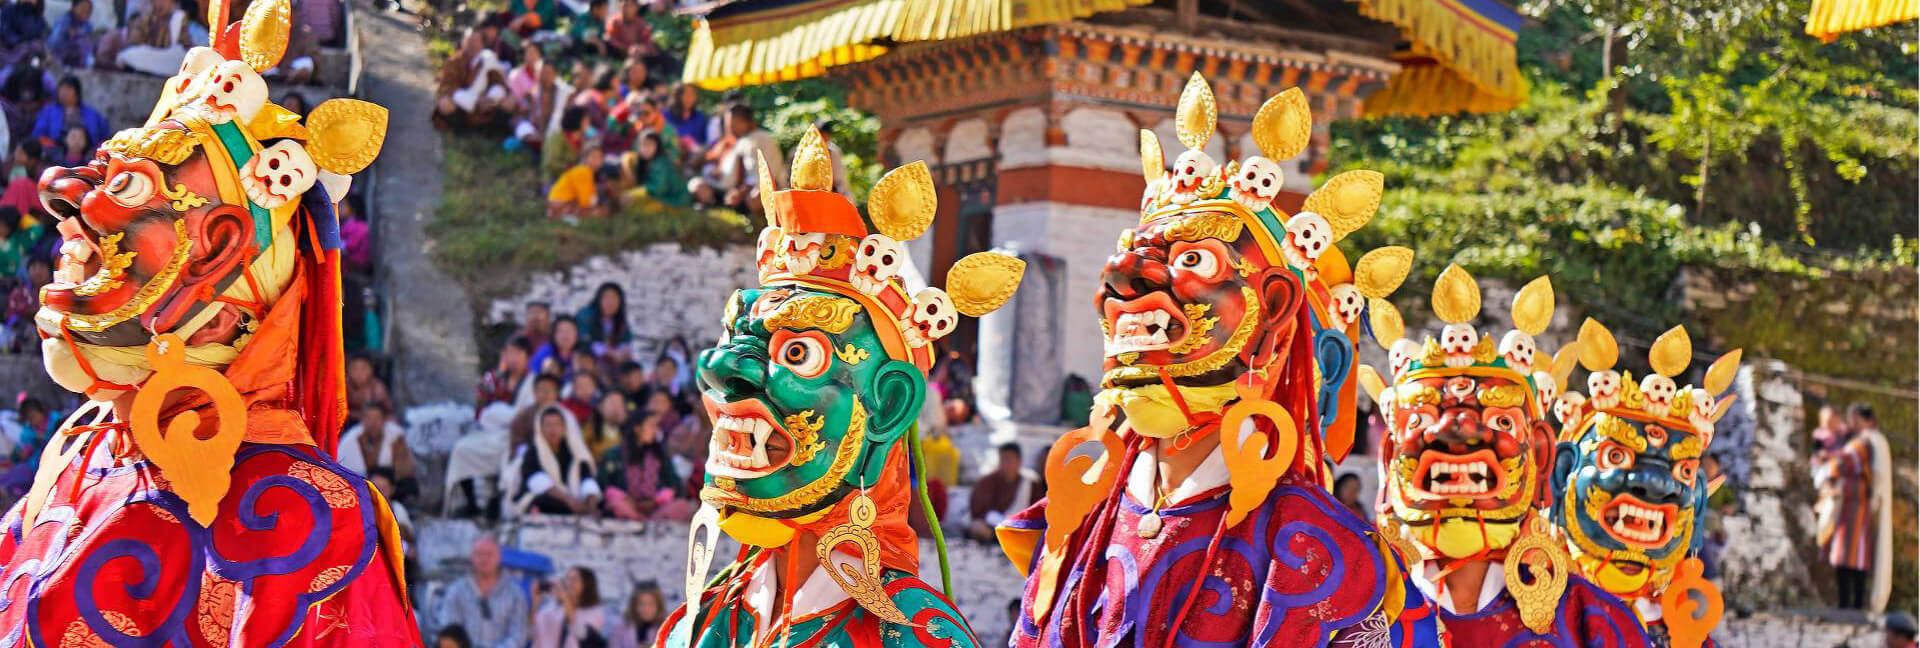 Rực rỡ sắc màu lễ hội Bhutan